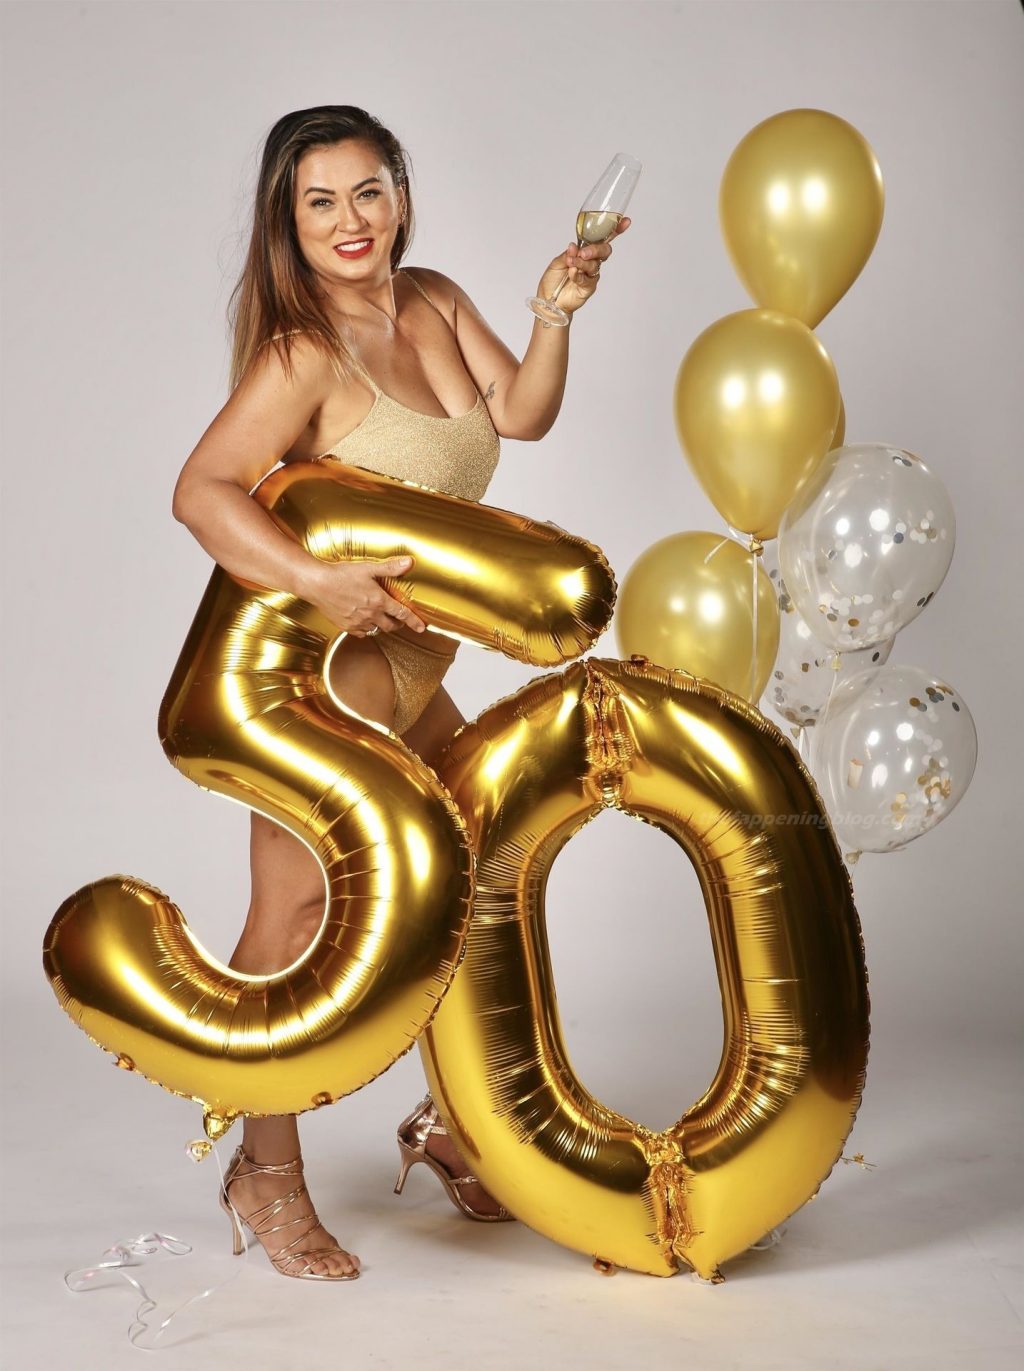 Mishel Meshes Looks Fabulous Turning 50 (28 Photos)